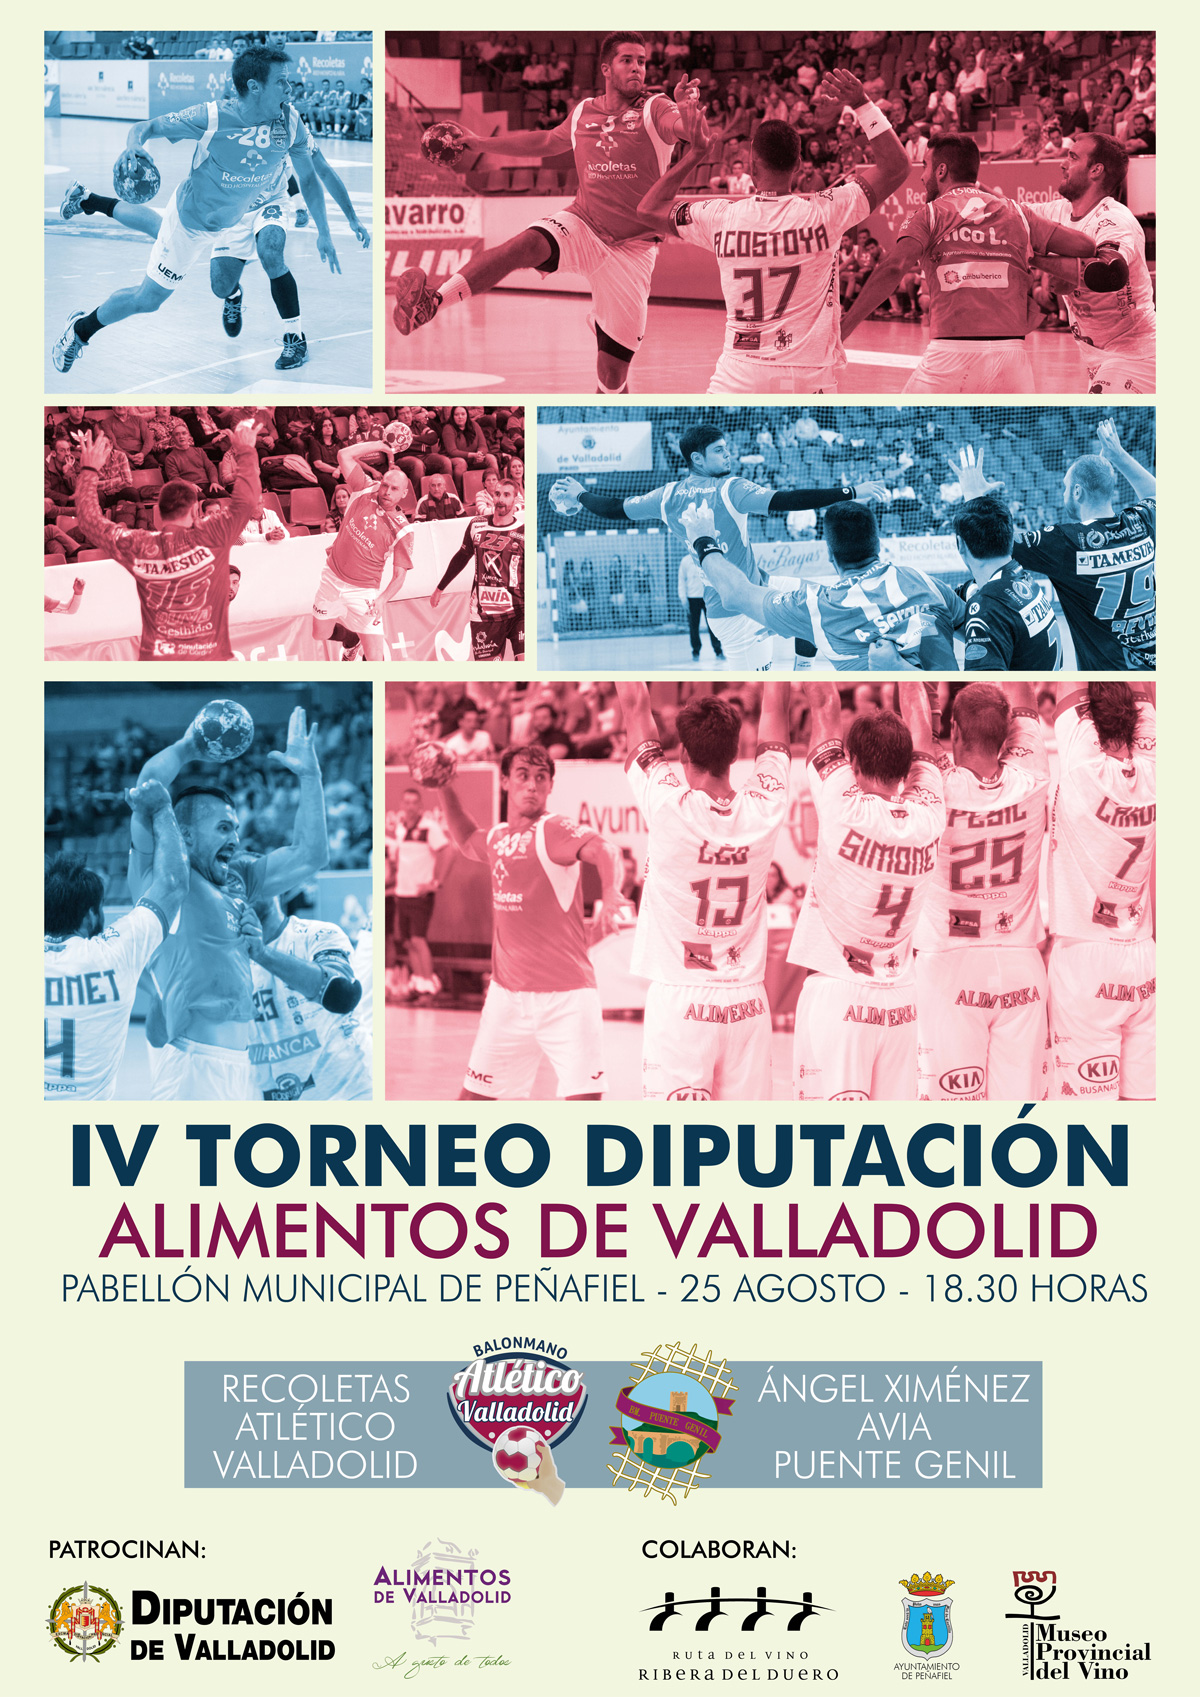 Jornada de turismo deportivo con la Diputación de Valladolid y el Recoletas Atlético Valladolid